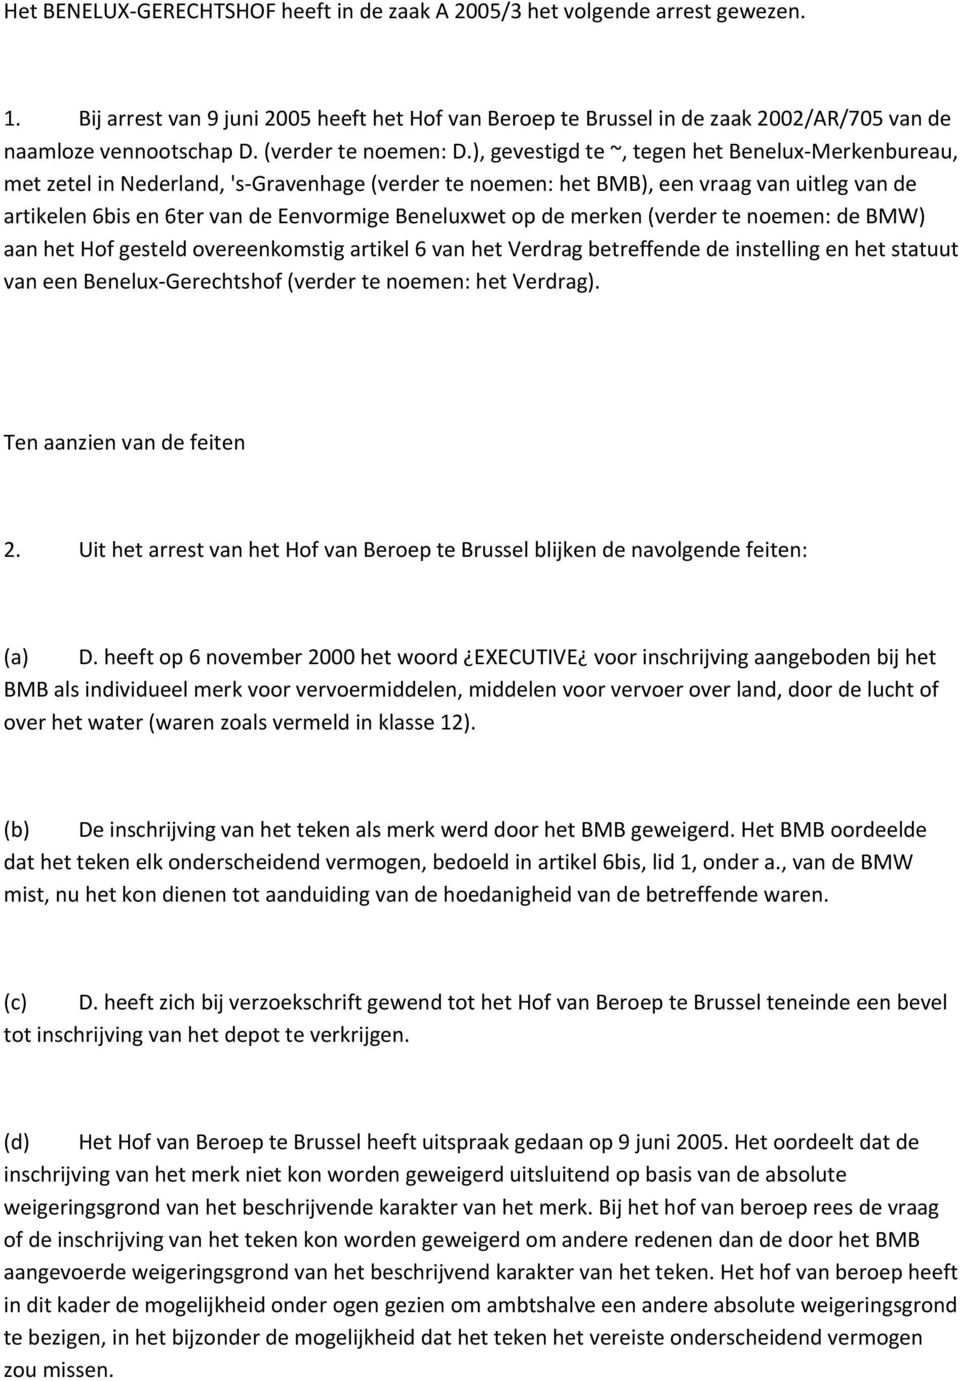 ), gevestigd te ~, tegen het Benelux Merkenbureau, met zetel in Nederland, 's Gravenhage (verder te noemen: het BMB), een vraag van uitleg van de artikelen 6bis en 6ter van de Eenvormige Beneluxwet